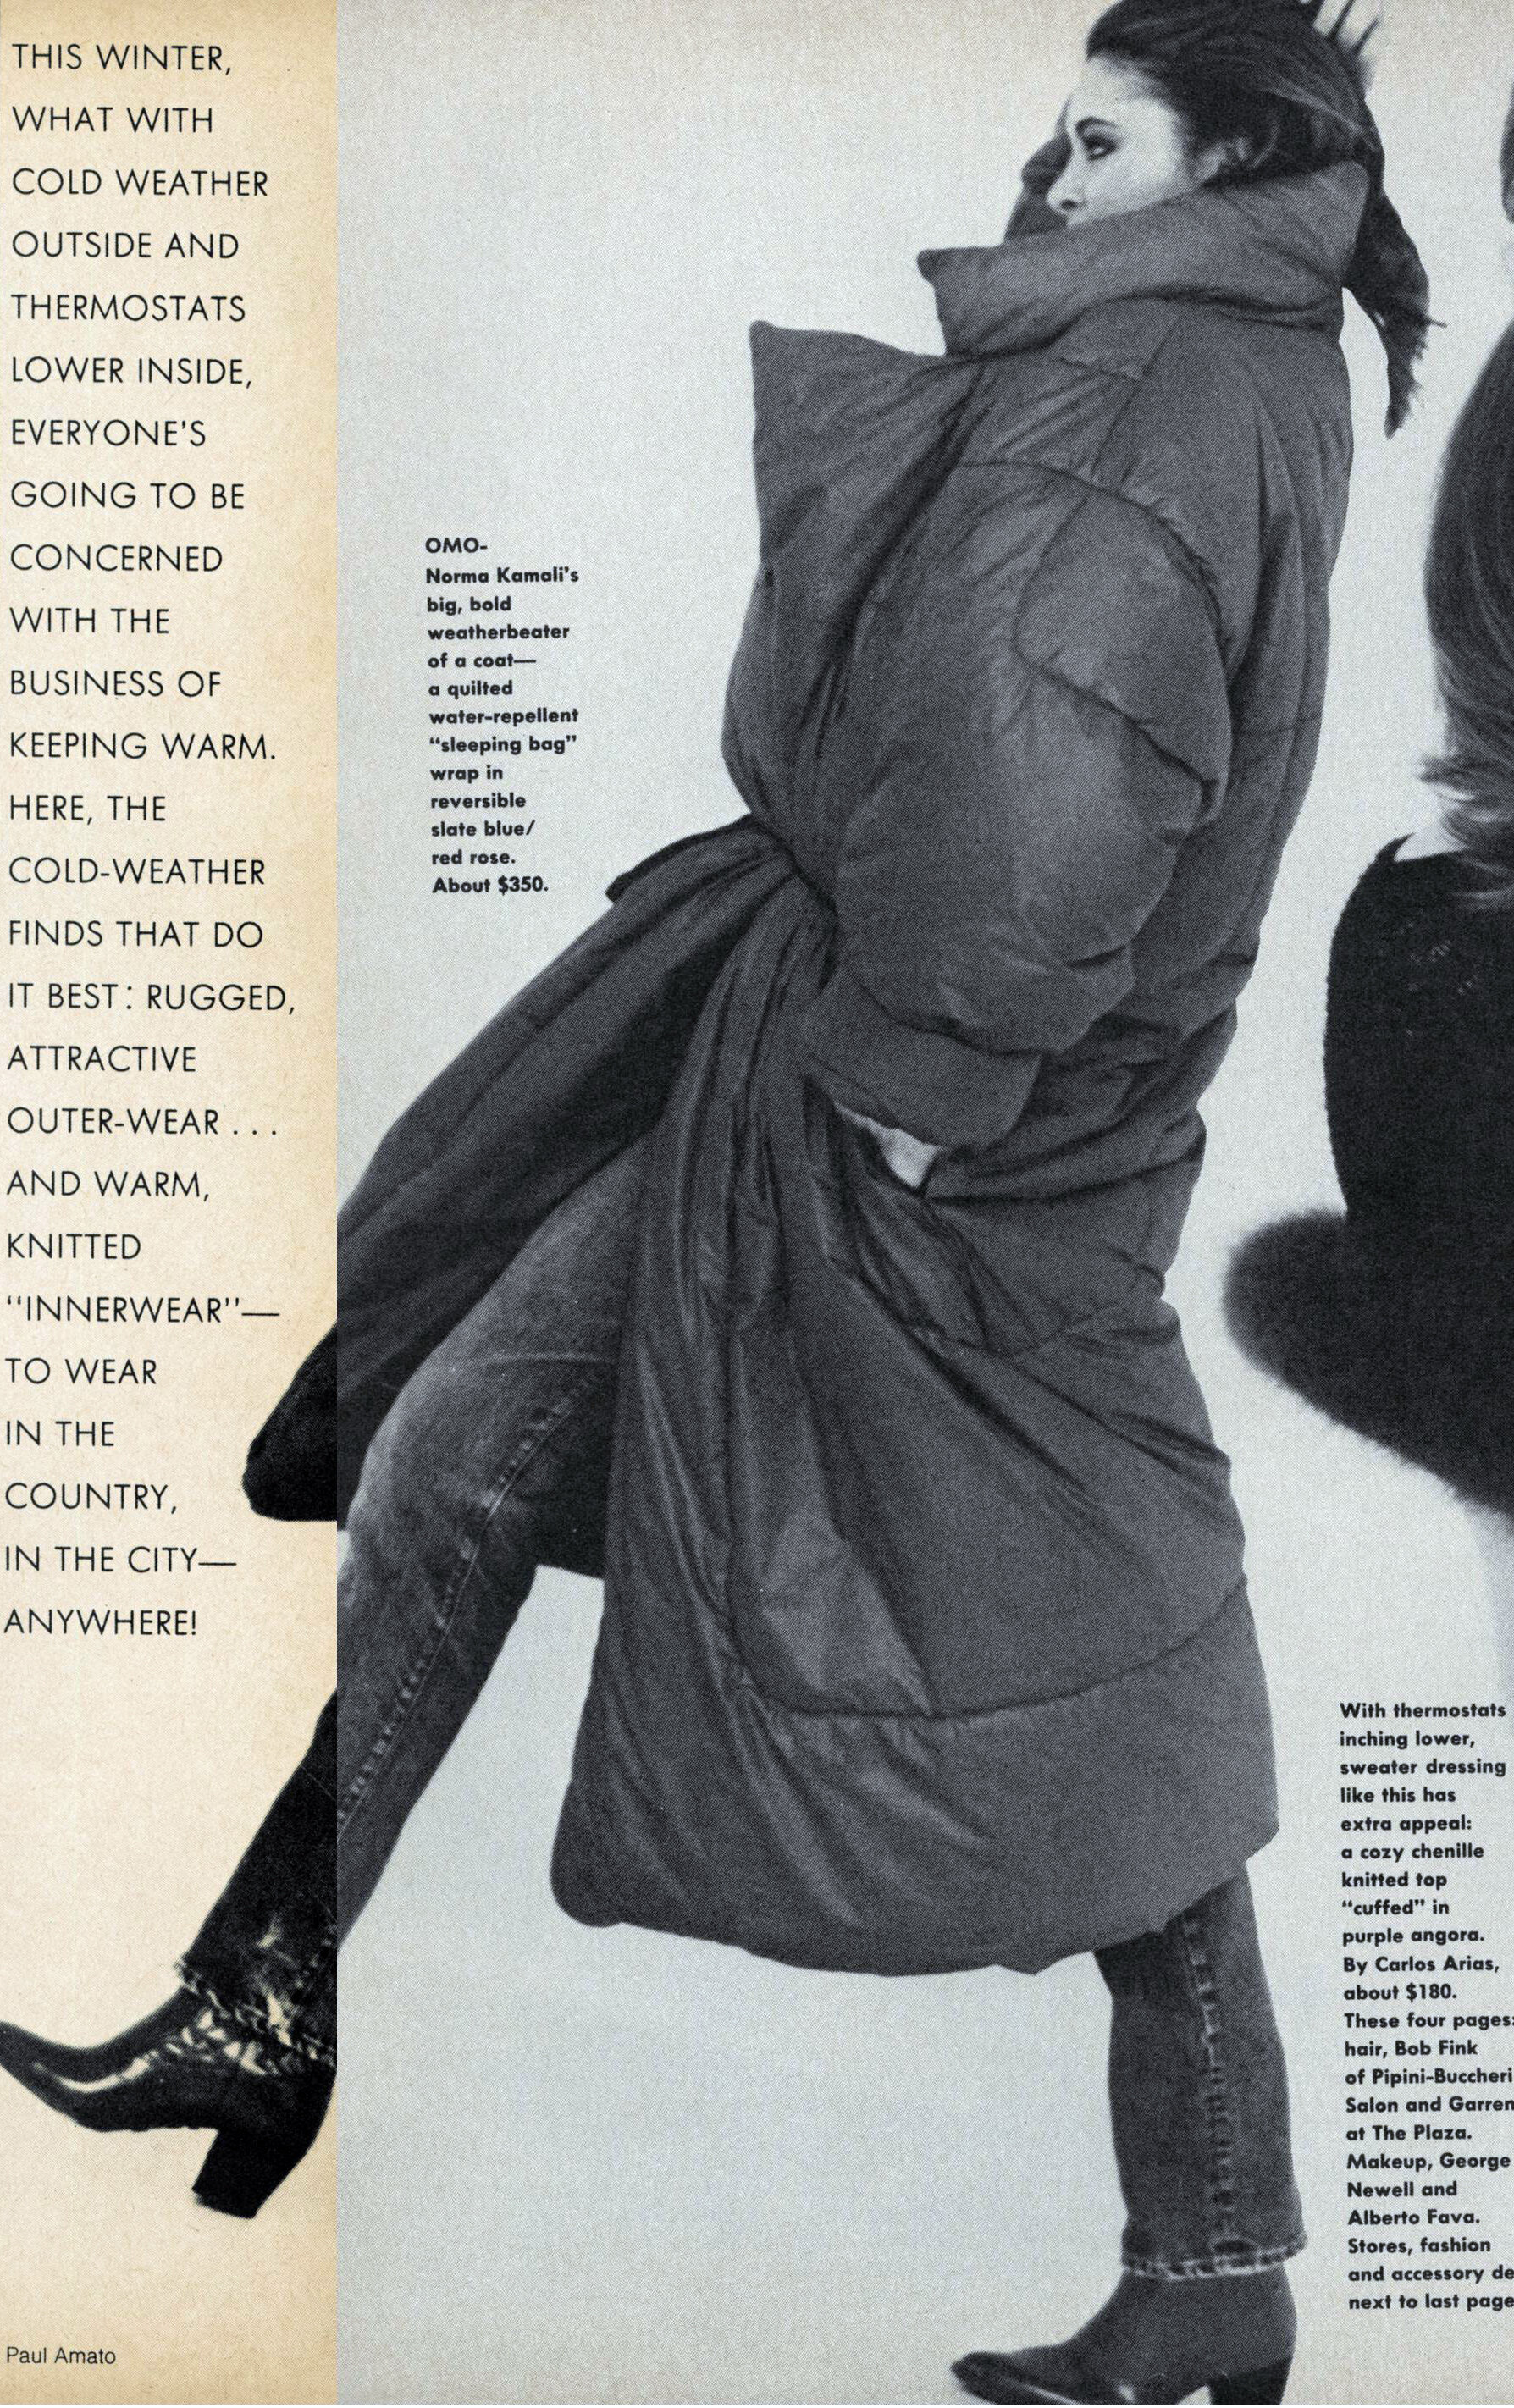 Vogue (Oct 1, 1979)_AMATO_KAMALI_375.JPG